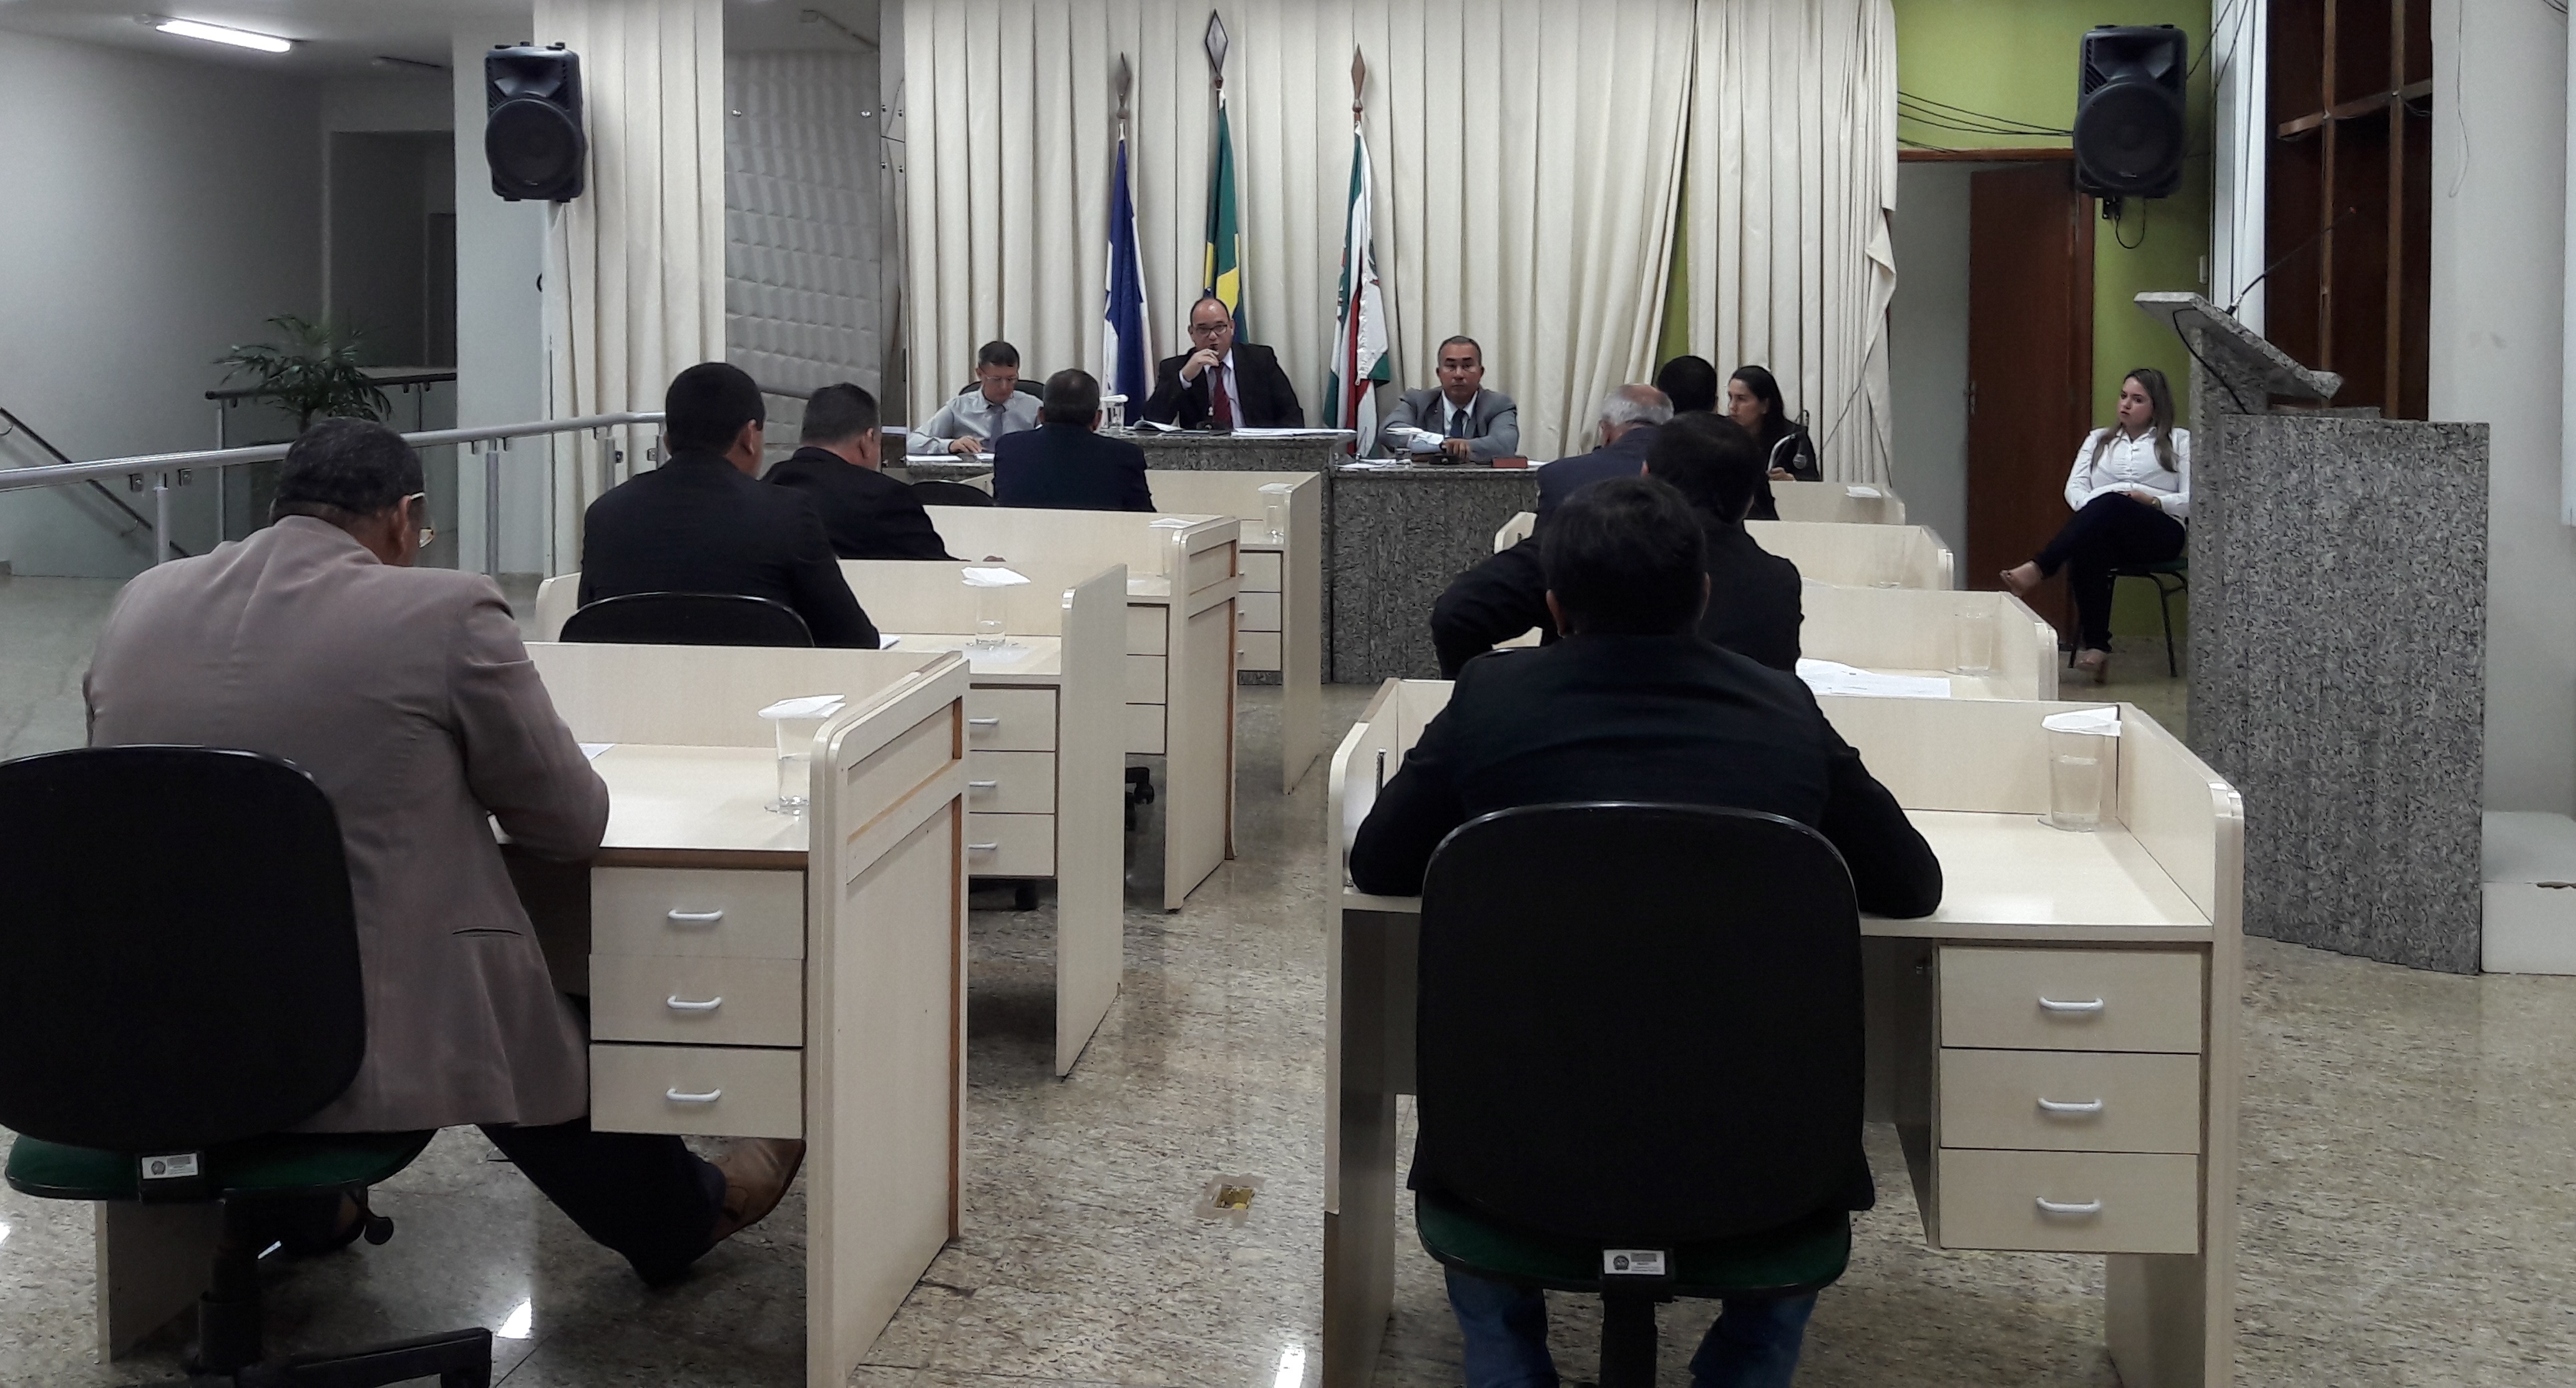 Câmara Municipal de Ecoporanga elege Mesa Diretora para atuar no exercício de 2018.